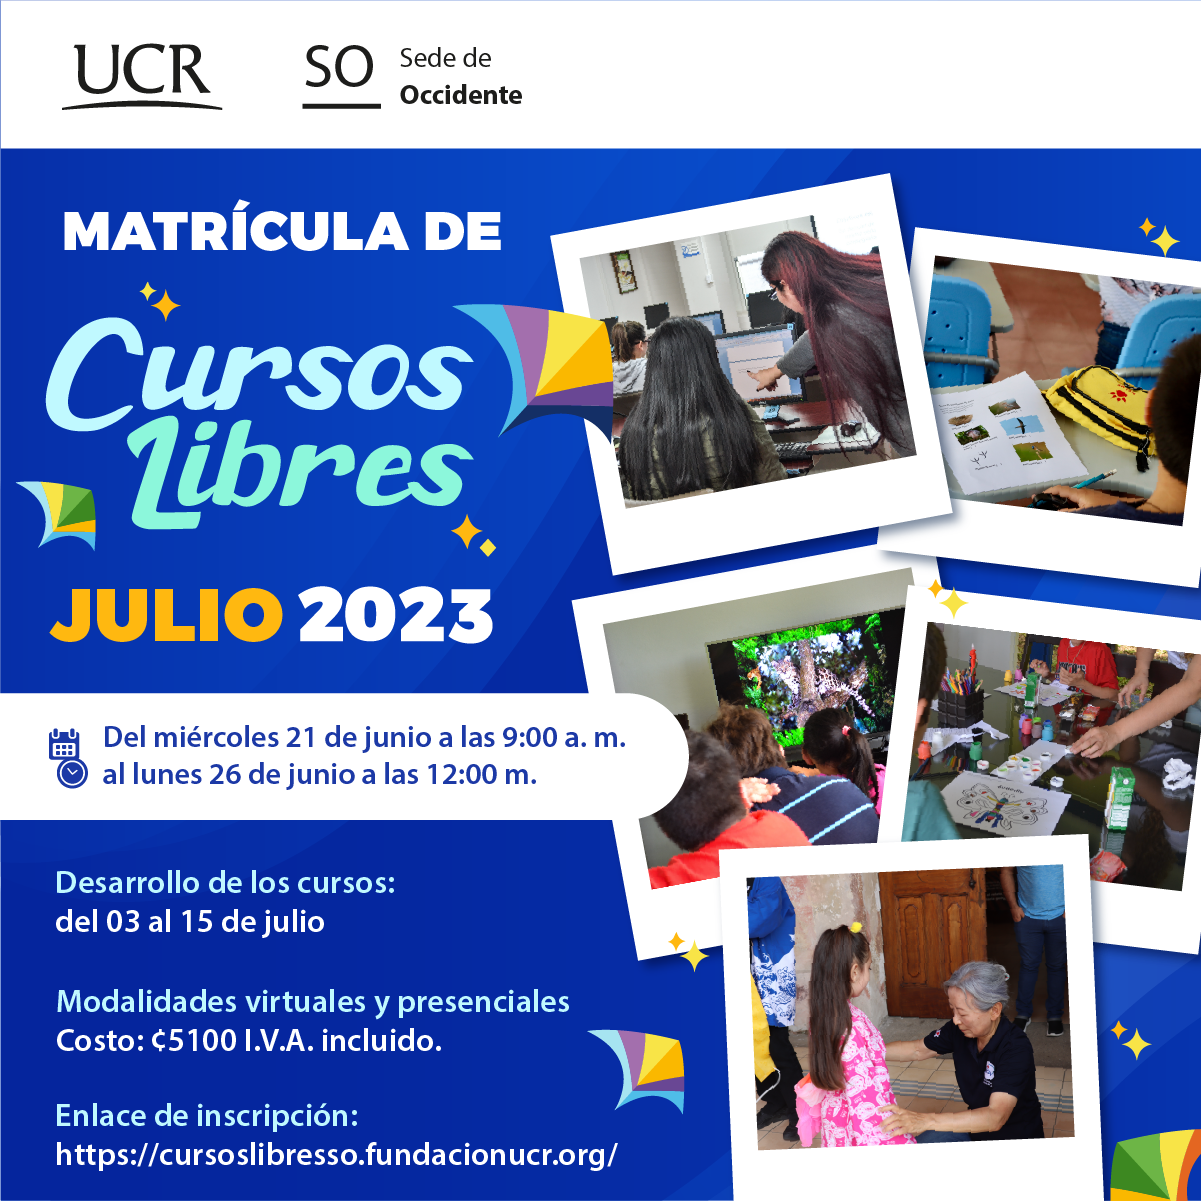 Matrícula cursos libres julio 2023 Universidad de Costa Rica Sede